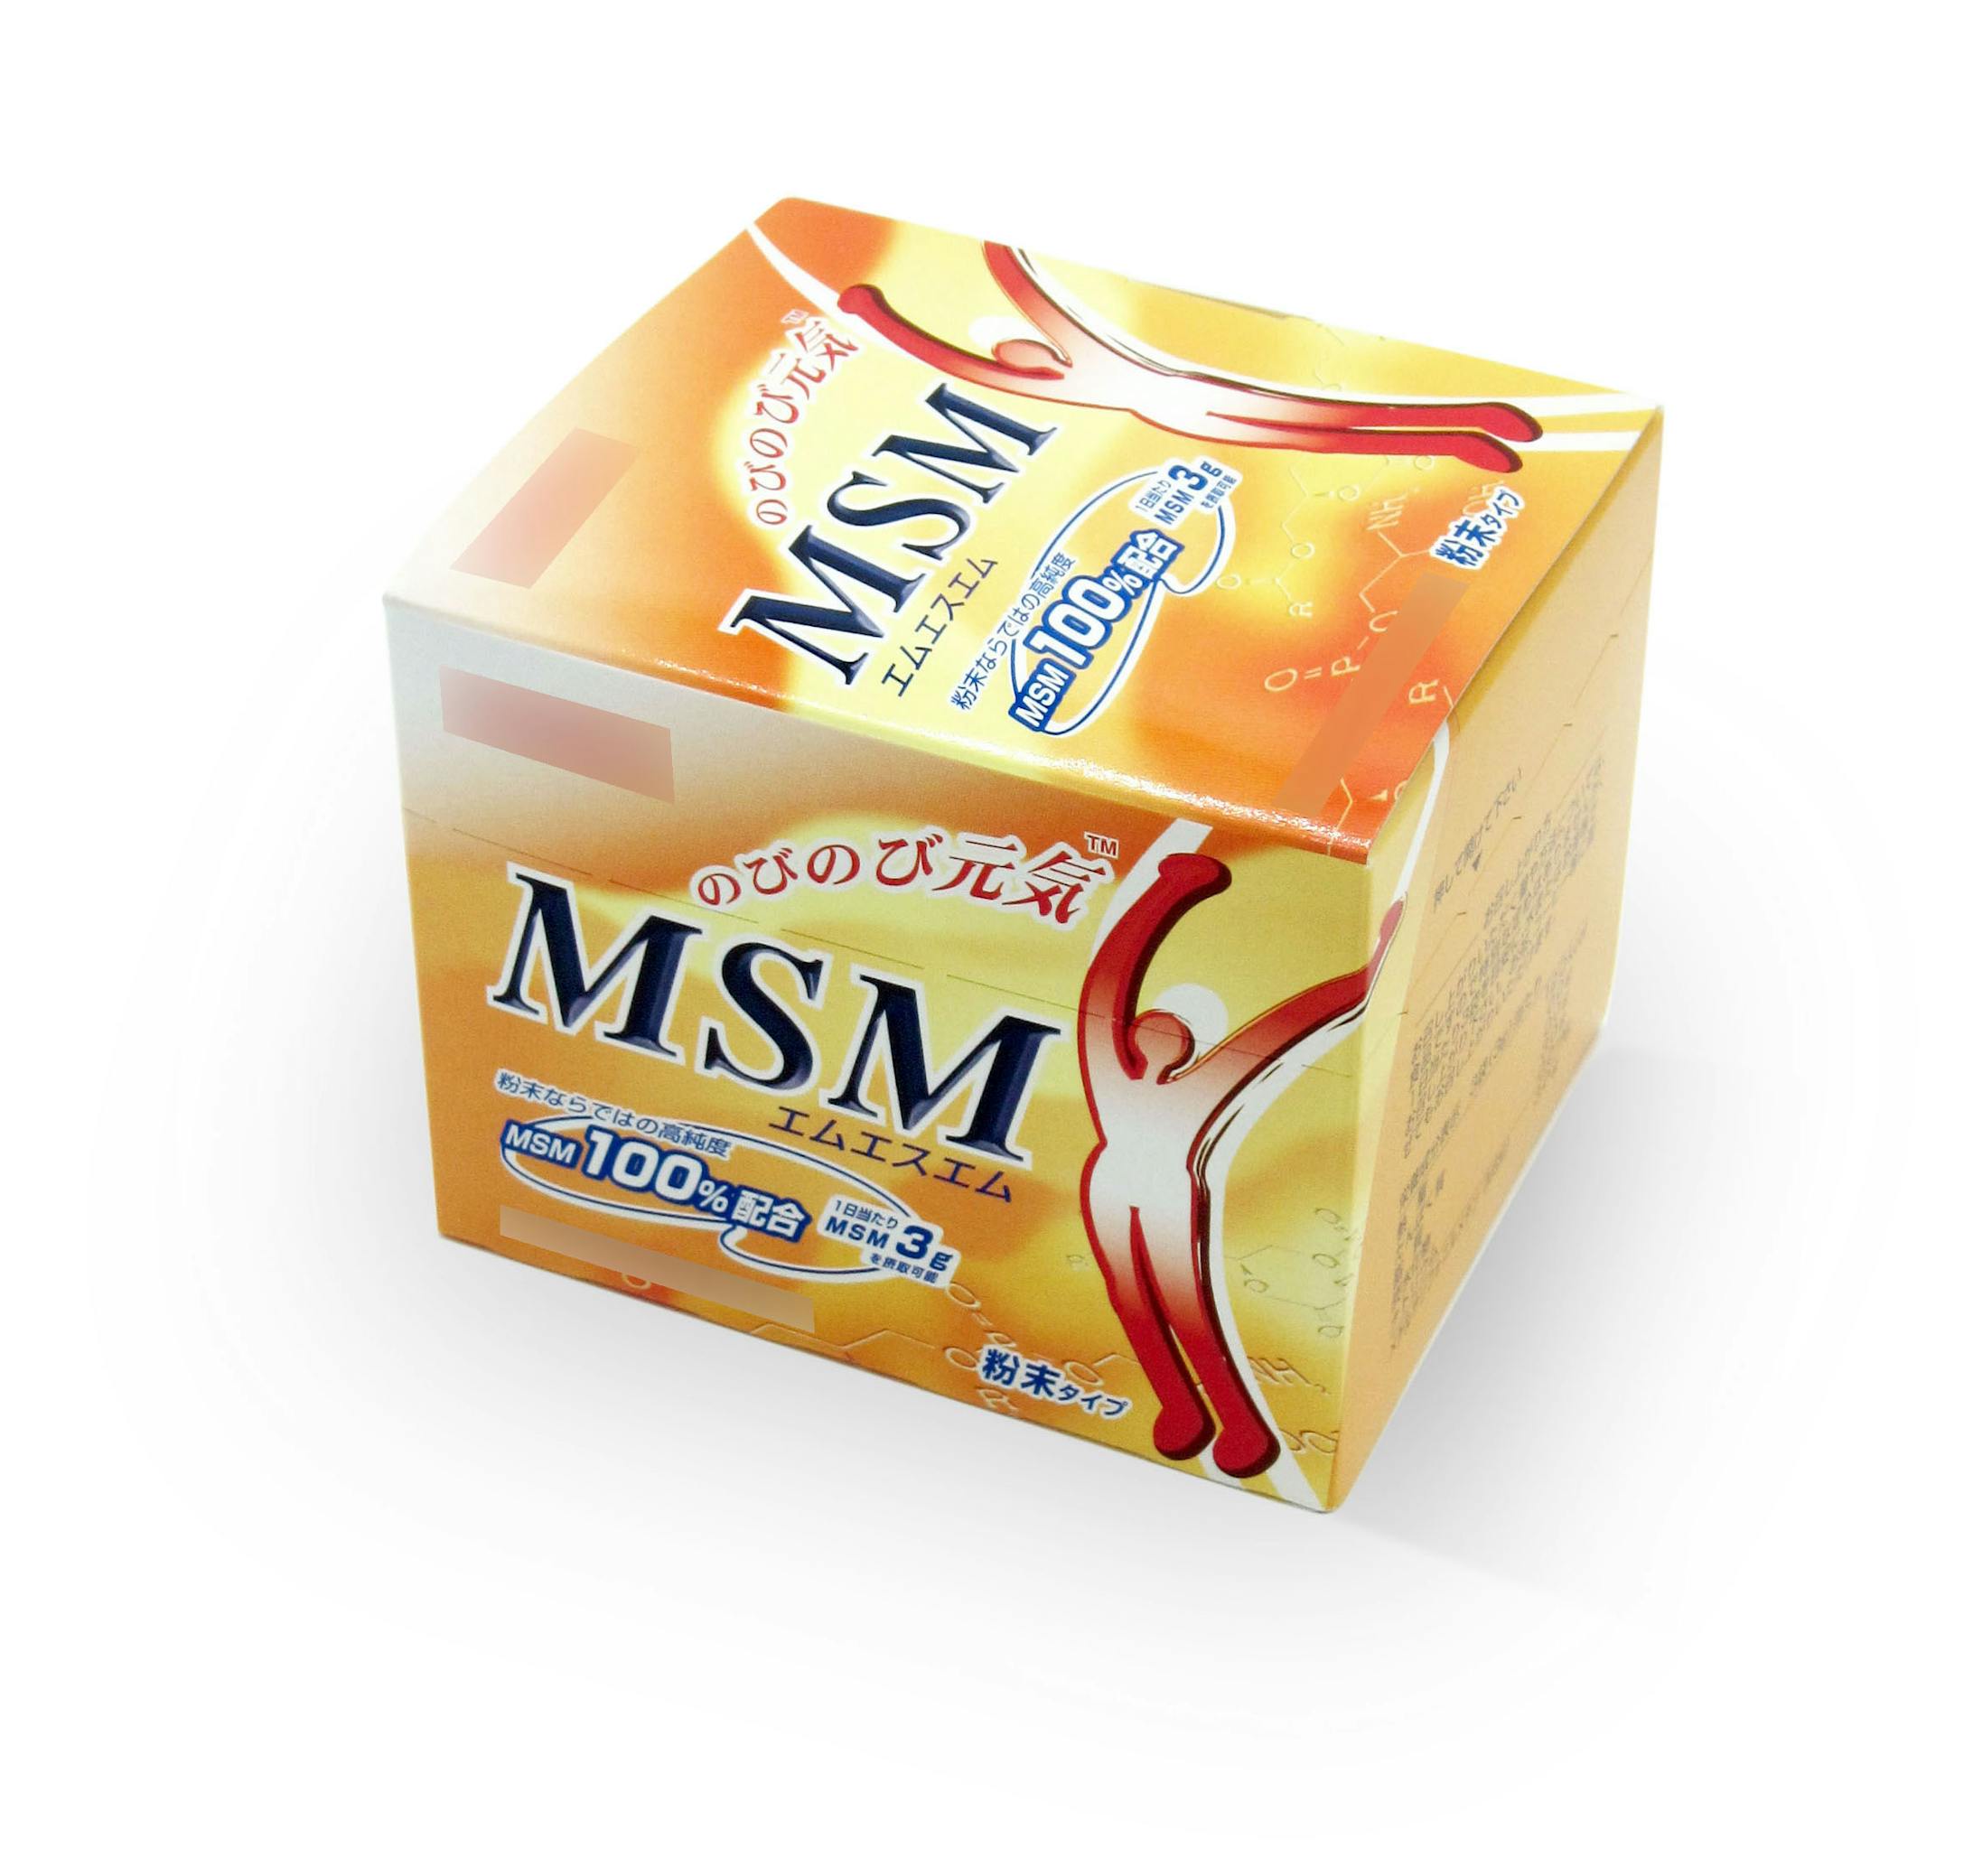 MSMサプリメント パッケージデザイン-1